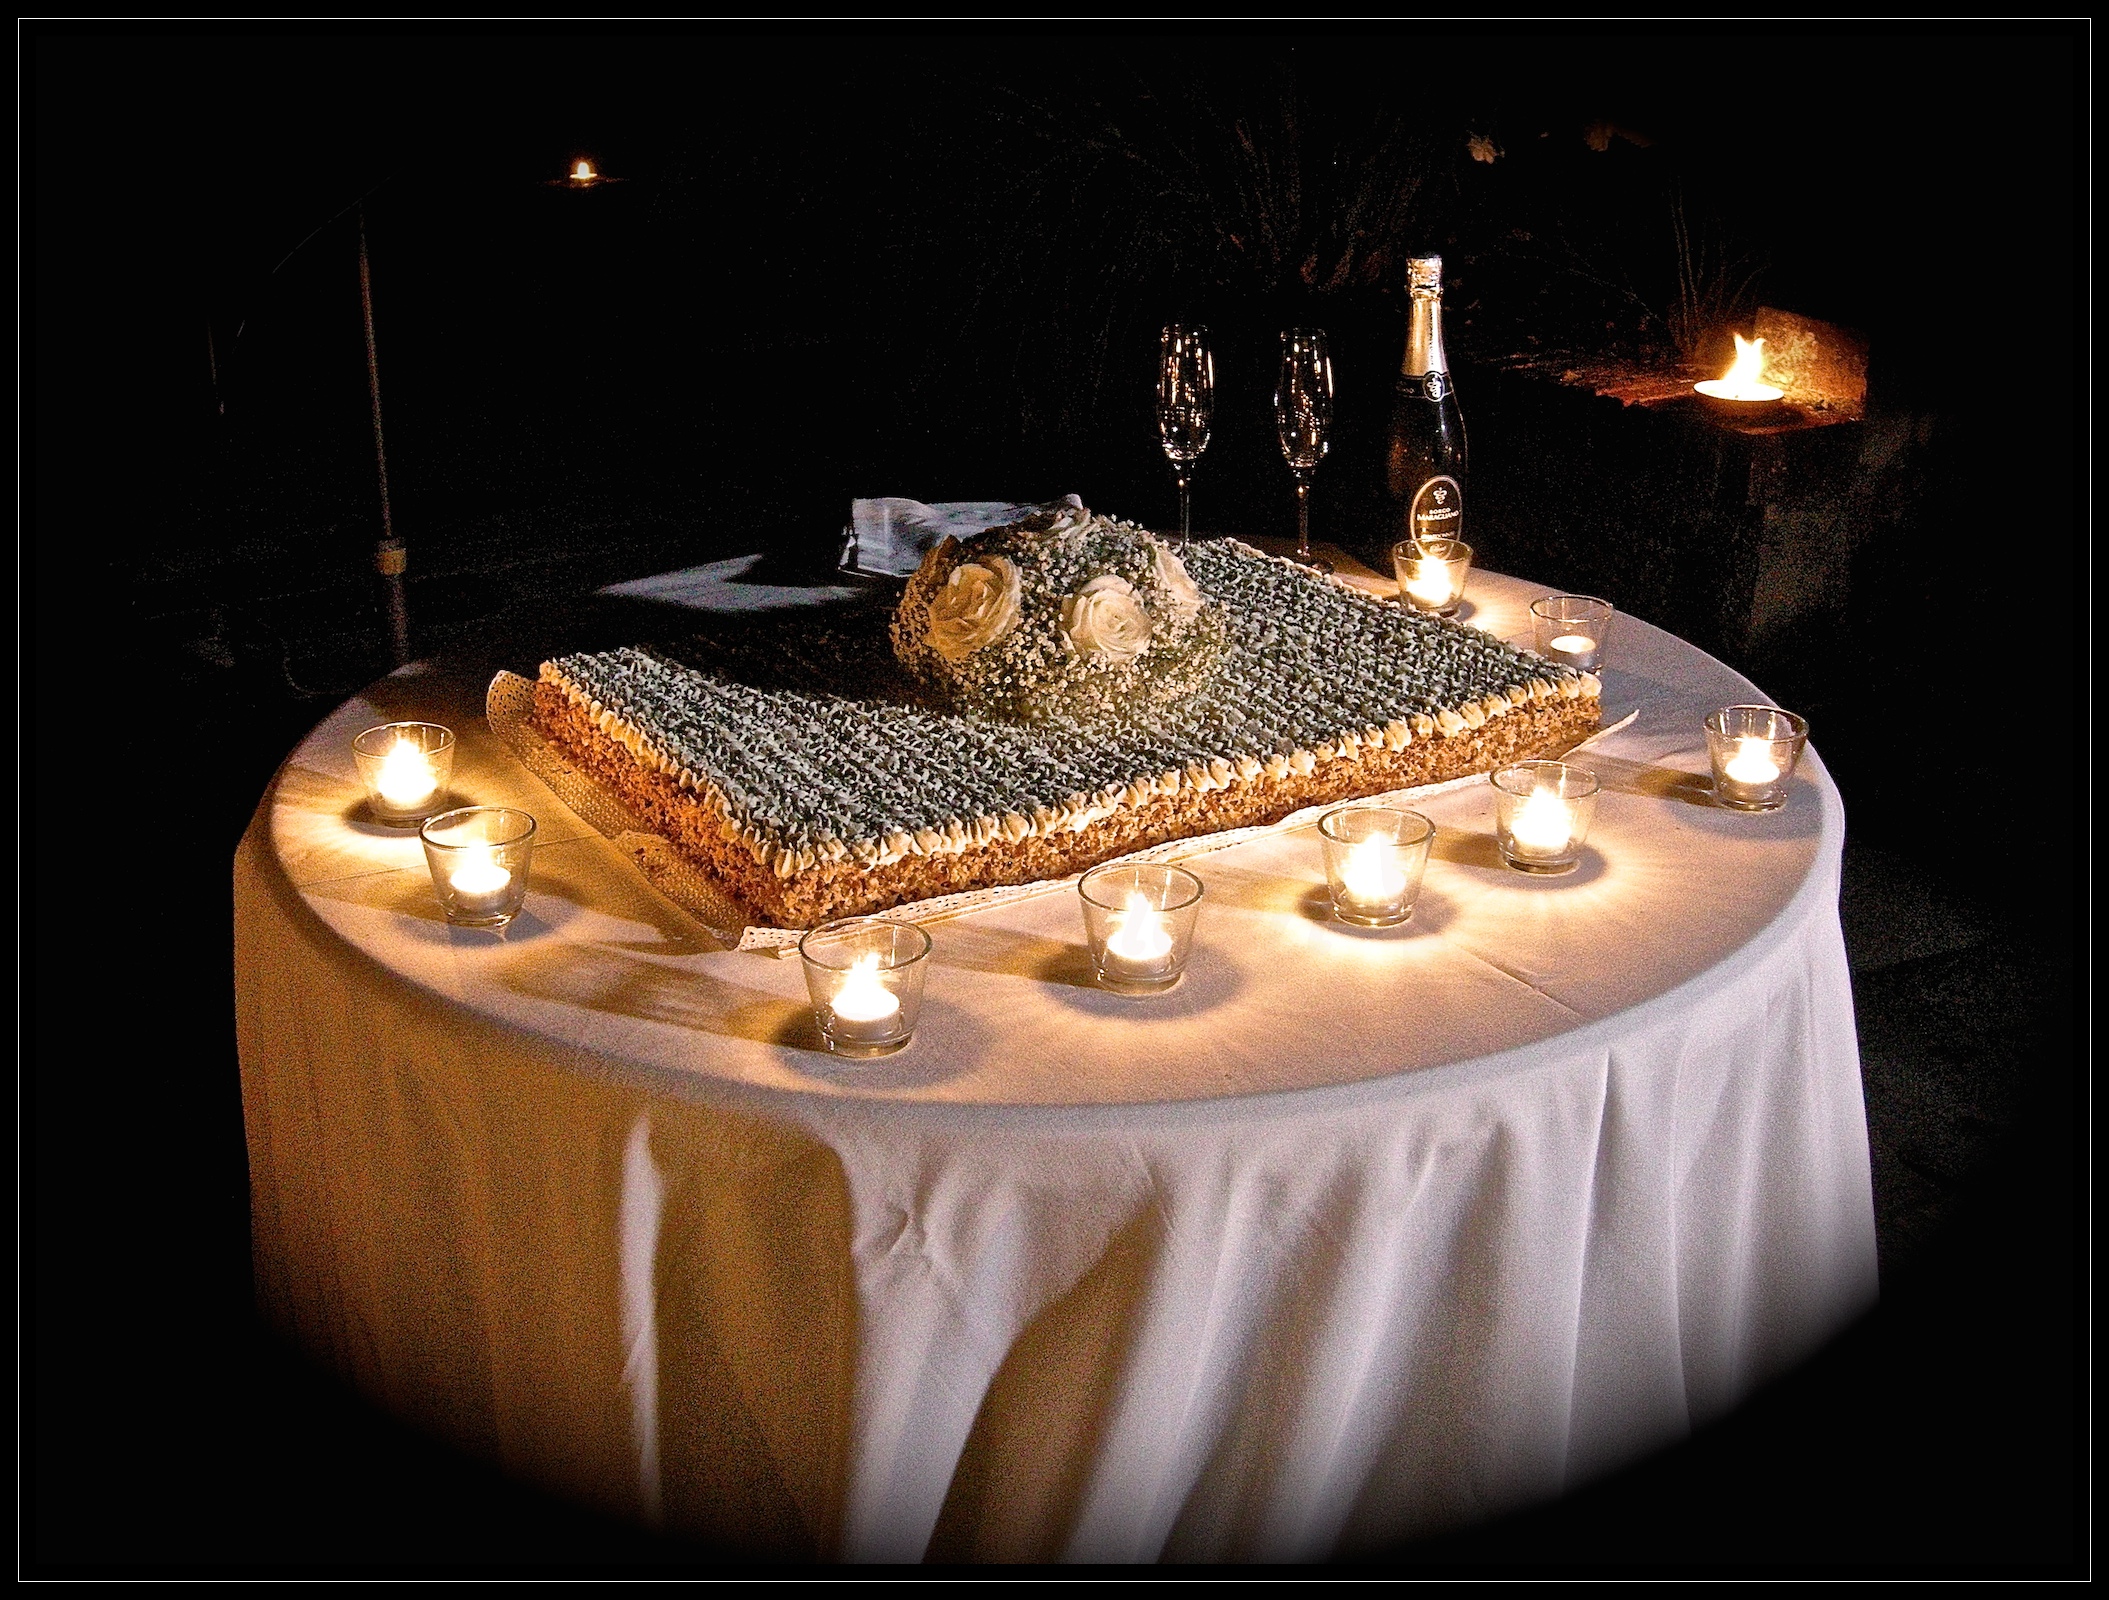 Wedding cake: "Croccante scioglievolezza alla nocciola"